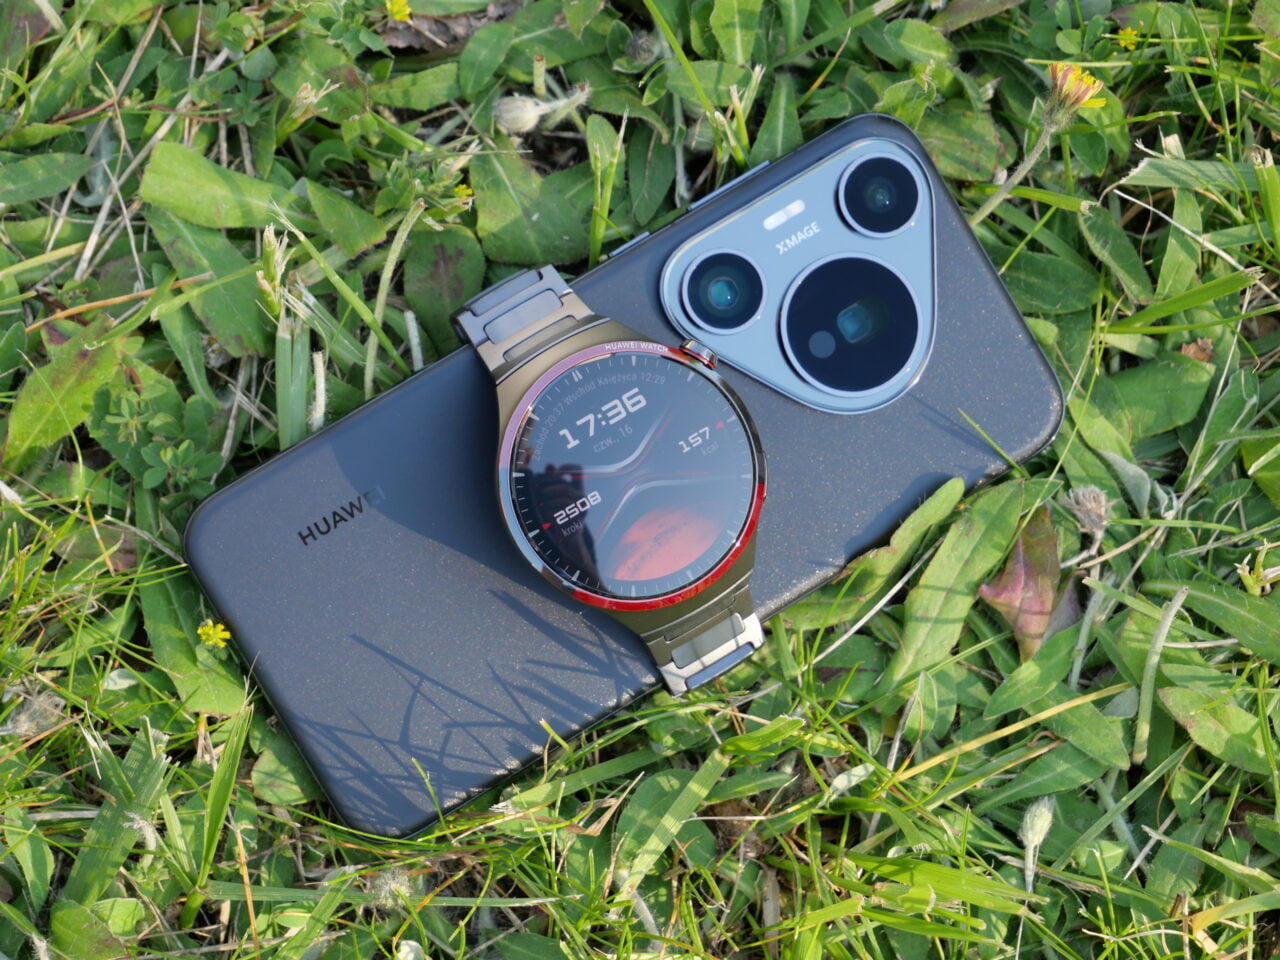 Smartfon Huawei oraz smartwatch z wyświetlaczem pokazującym godzinę 17:36, leżące na trawie.